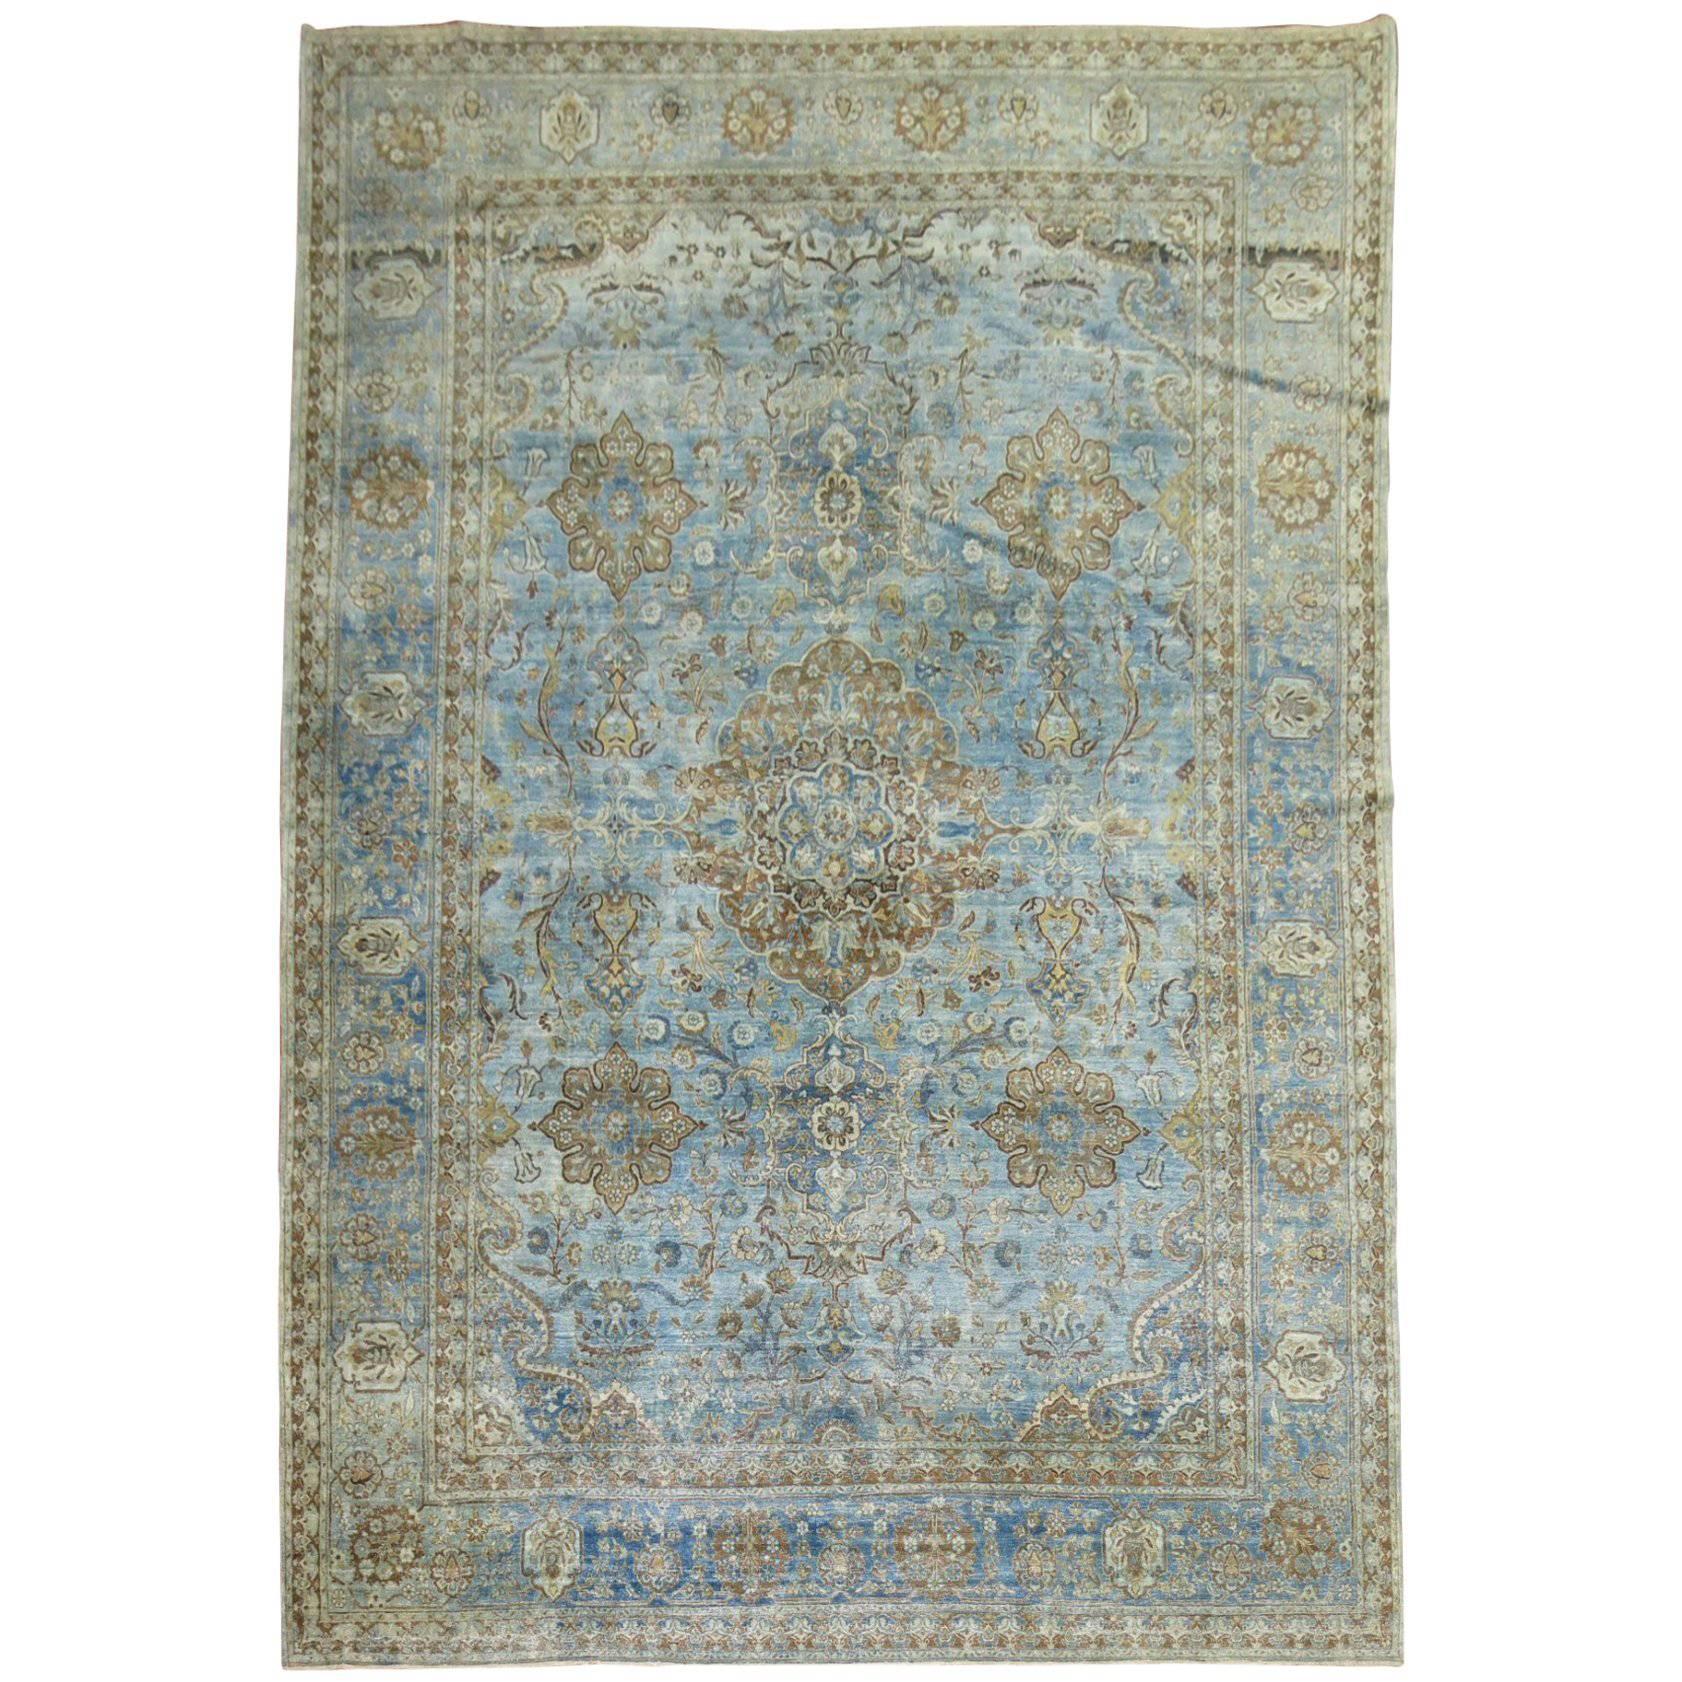 Tapis persan Kashan ancien bleu de la collection Zabihi